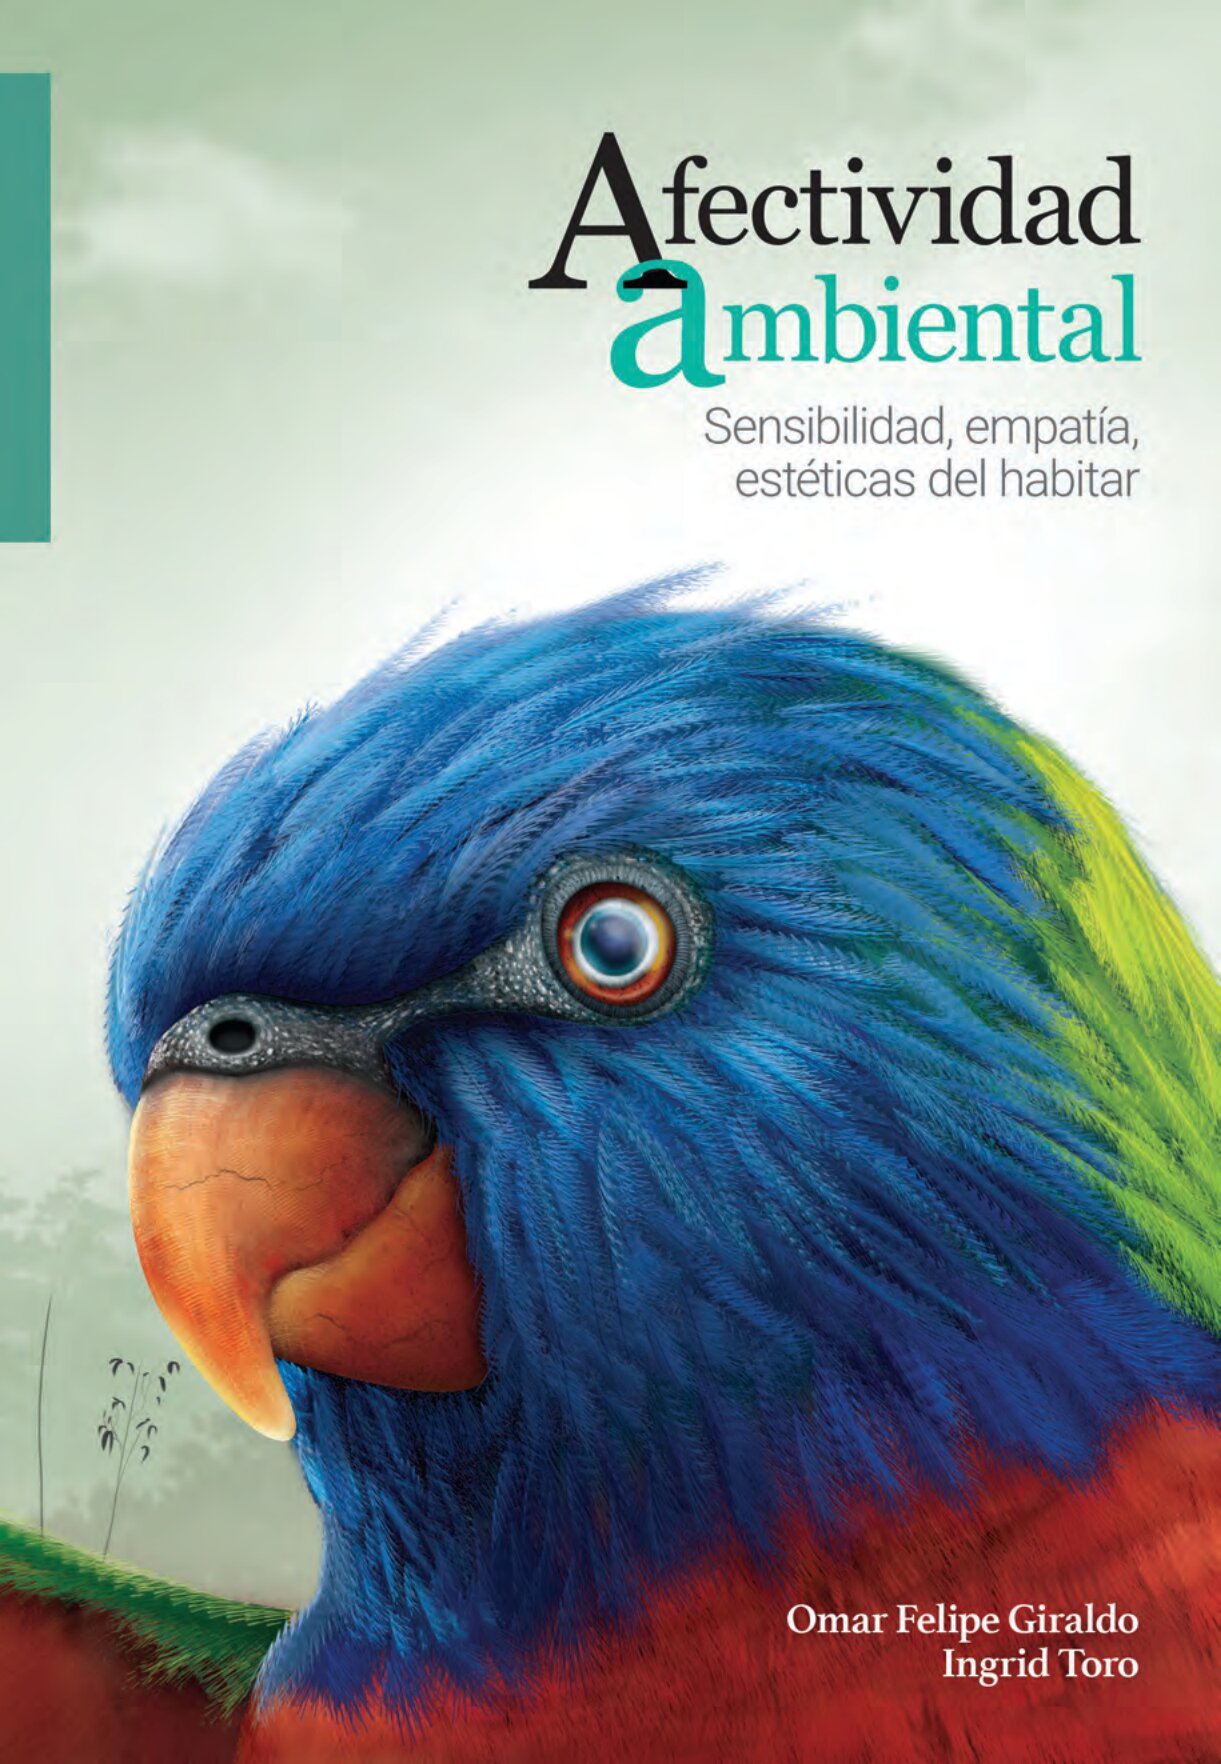 Descarga el libro Afectividad ambiental: sensibilidad, empatía, estéticas del habitar